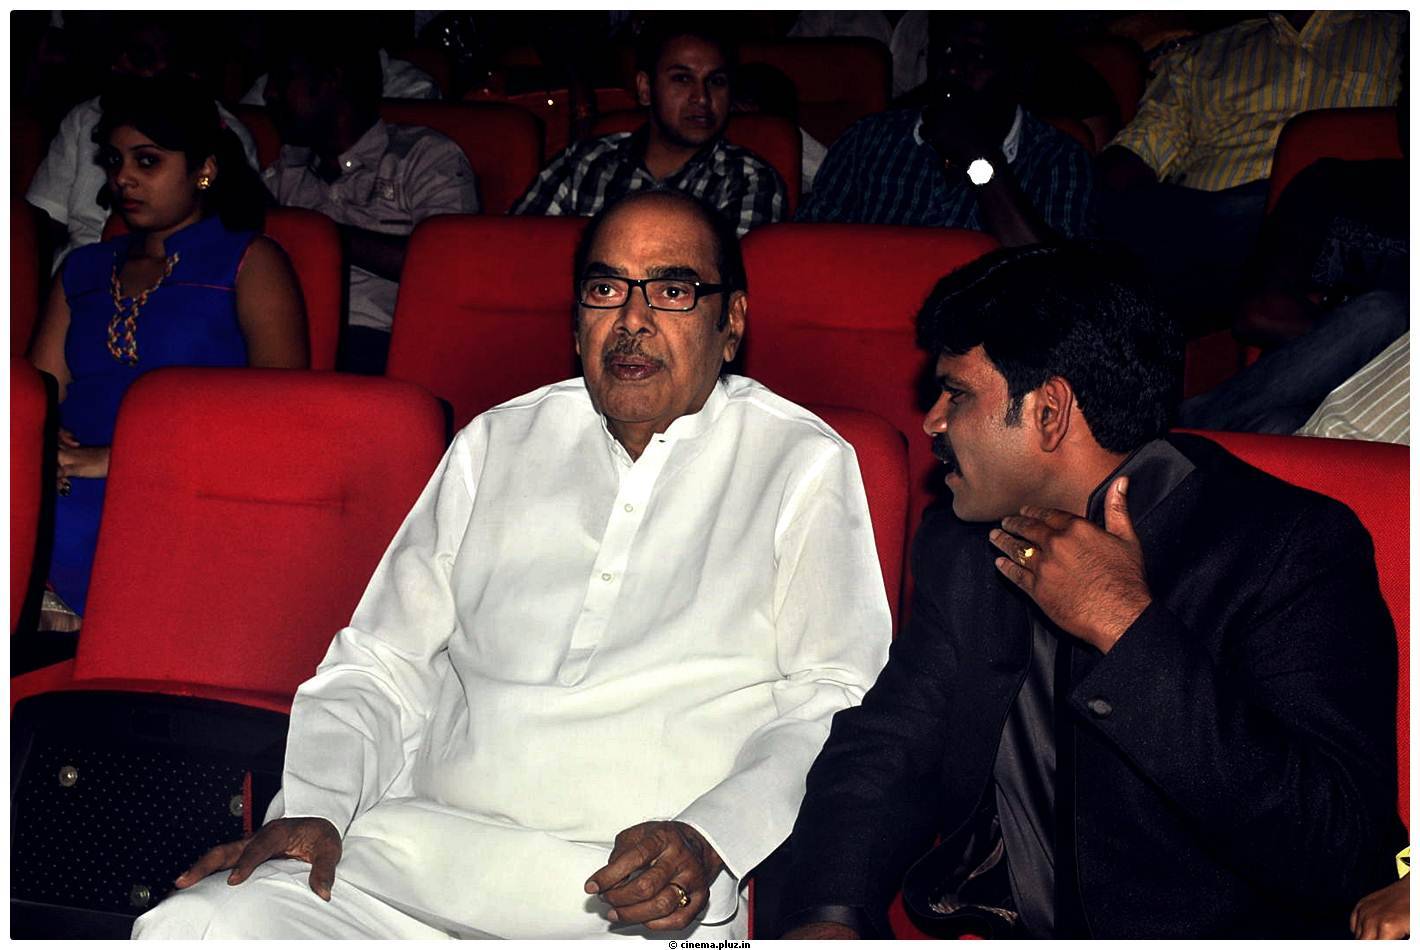 D. Ramanaidu - Cinemaa Mahila Awards 2013 Photos | Picture 478050